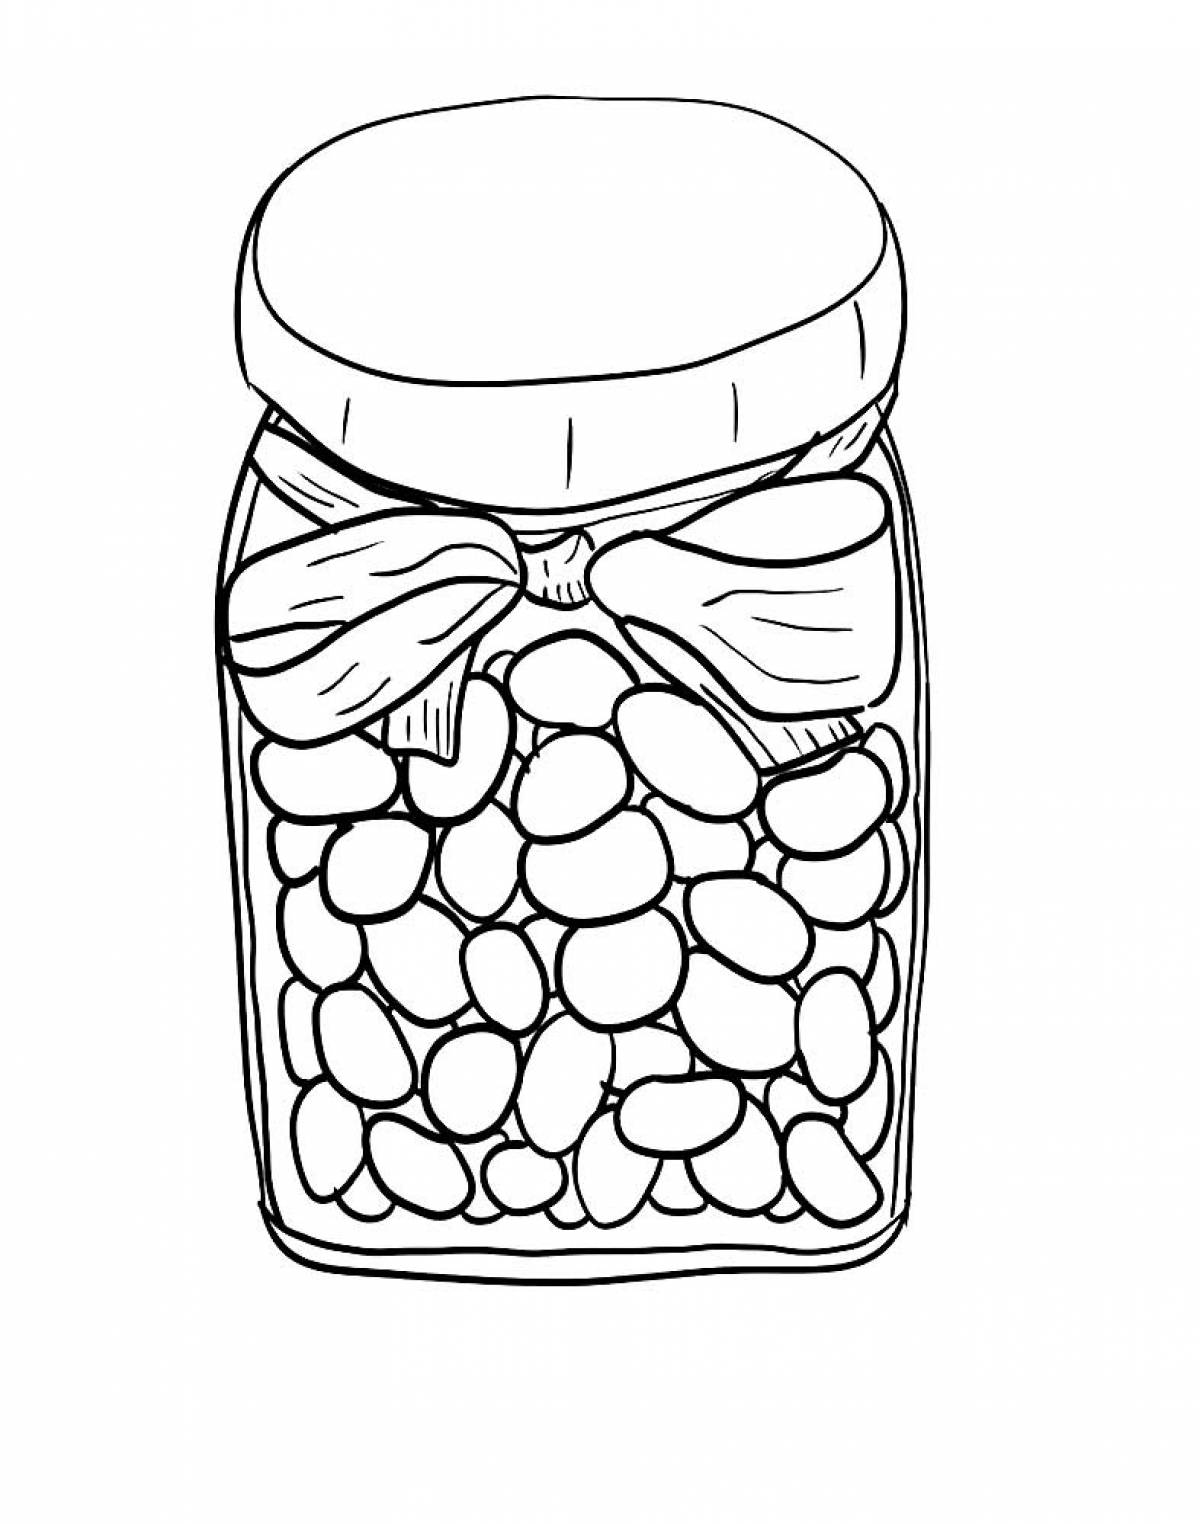 Beans in a jar